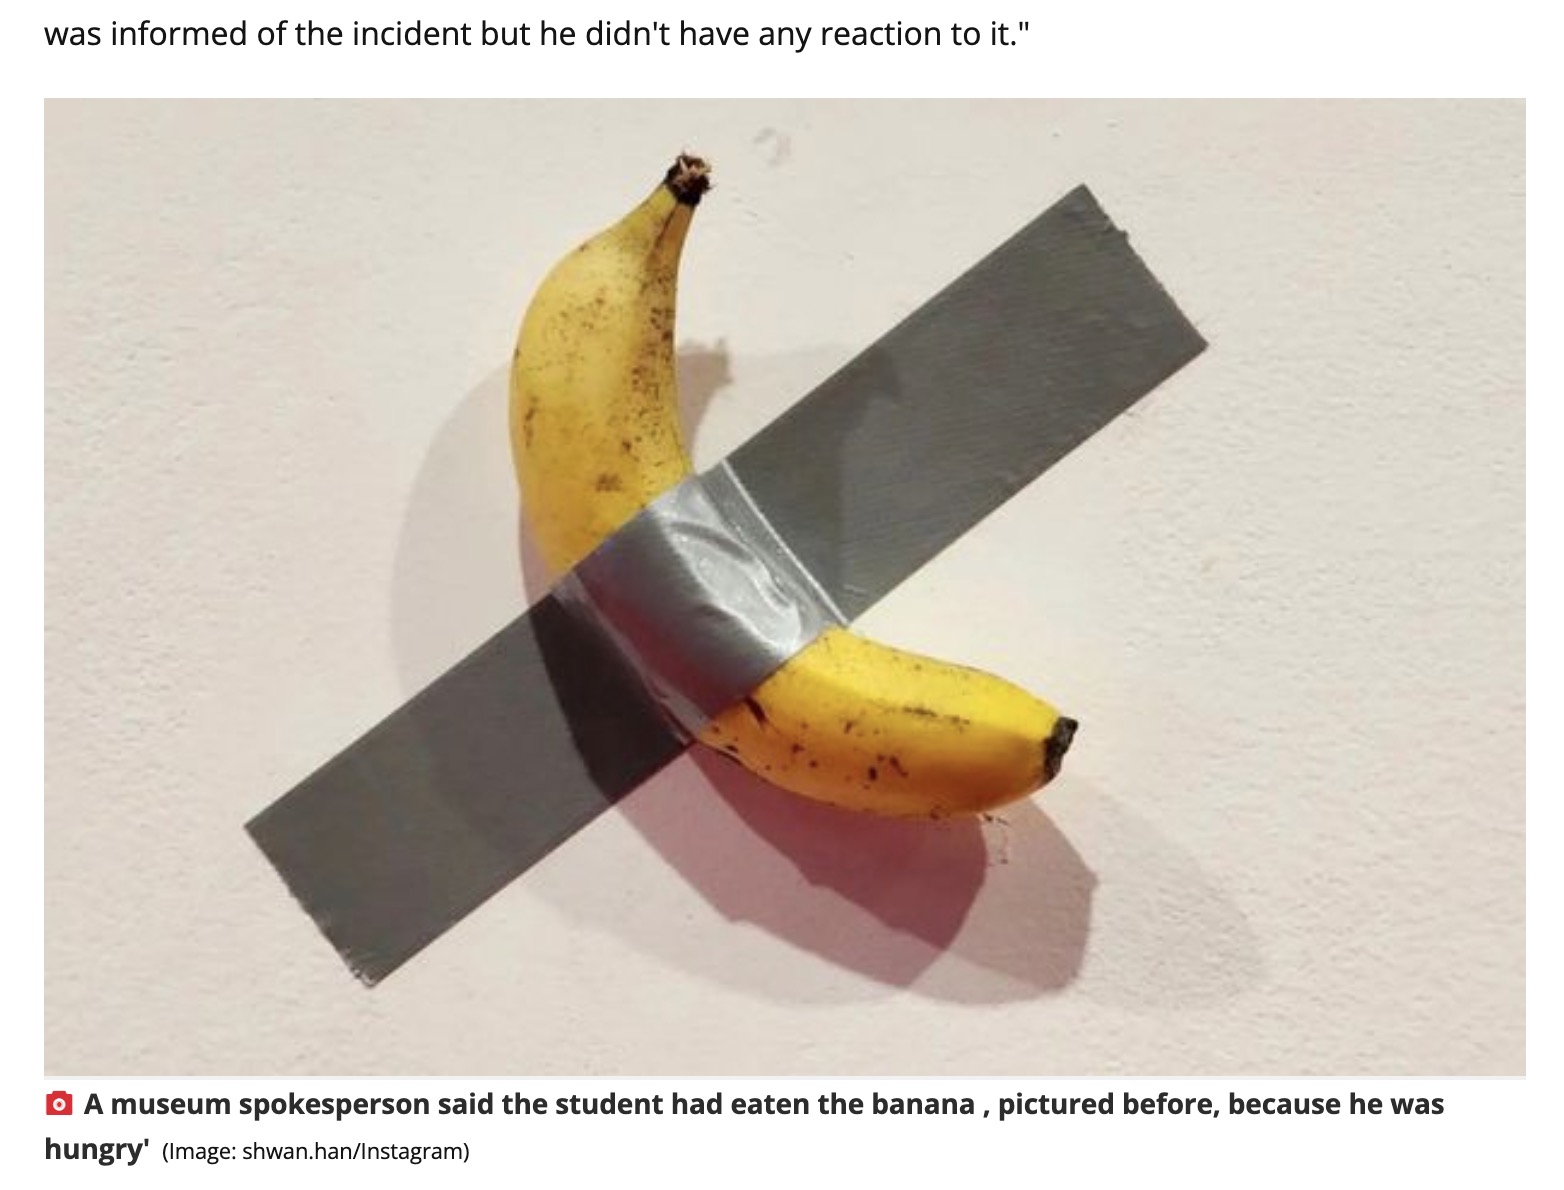 イタリア人アーティスト、マウリツィオ・カテランの個展に展示された、有名なアート作品『コメディアン』。このバナナを鑑賞中の学生が「お腹が空いた」という理由で食べてしまう（画像は『The Daily Star　2023年5月1日付「Student eats £96K artwork of banana duct-taped to museum wall because 'he was hungry'」（Image: shwan.han/Instagram）』のスクリーンショット）